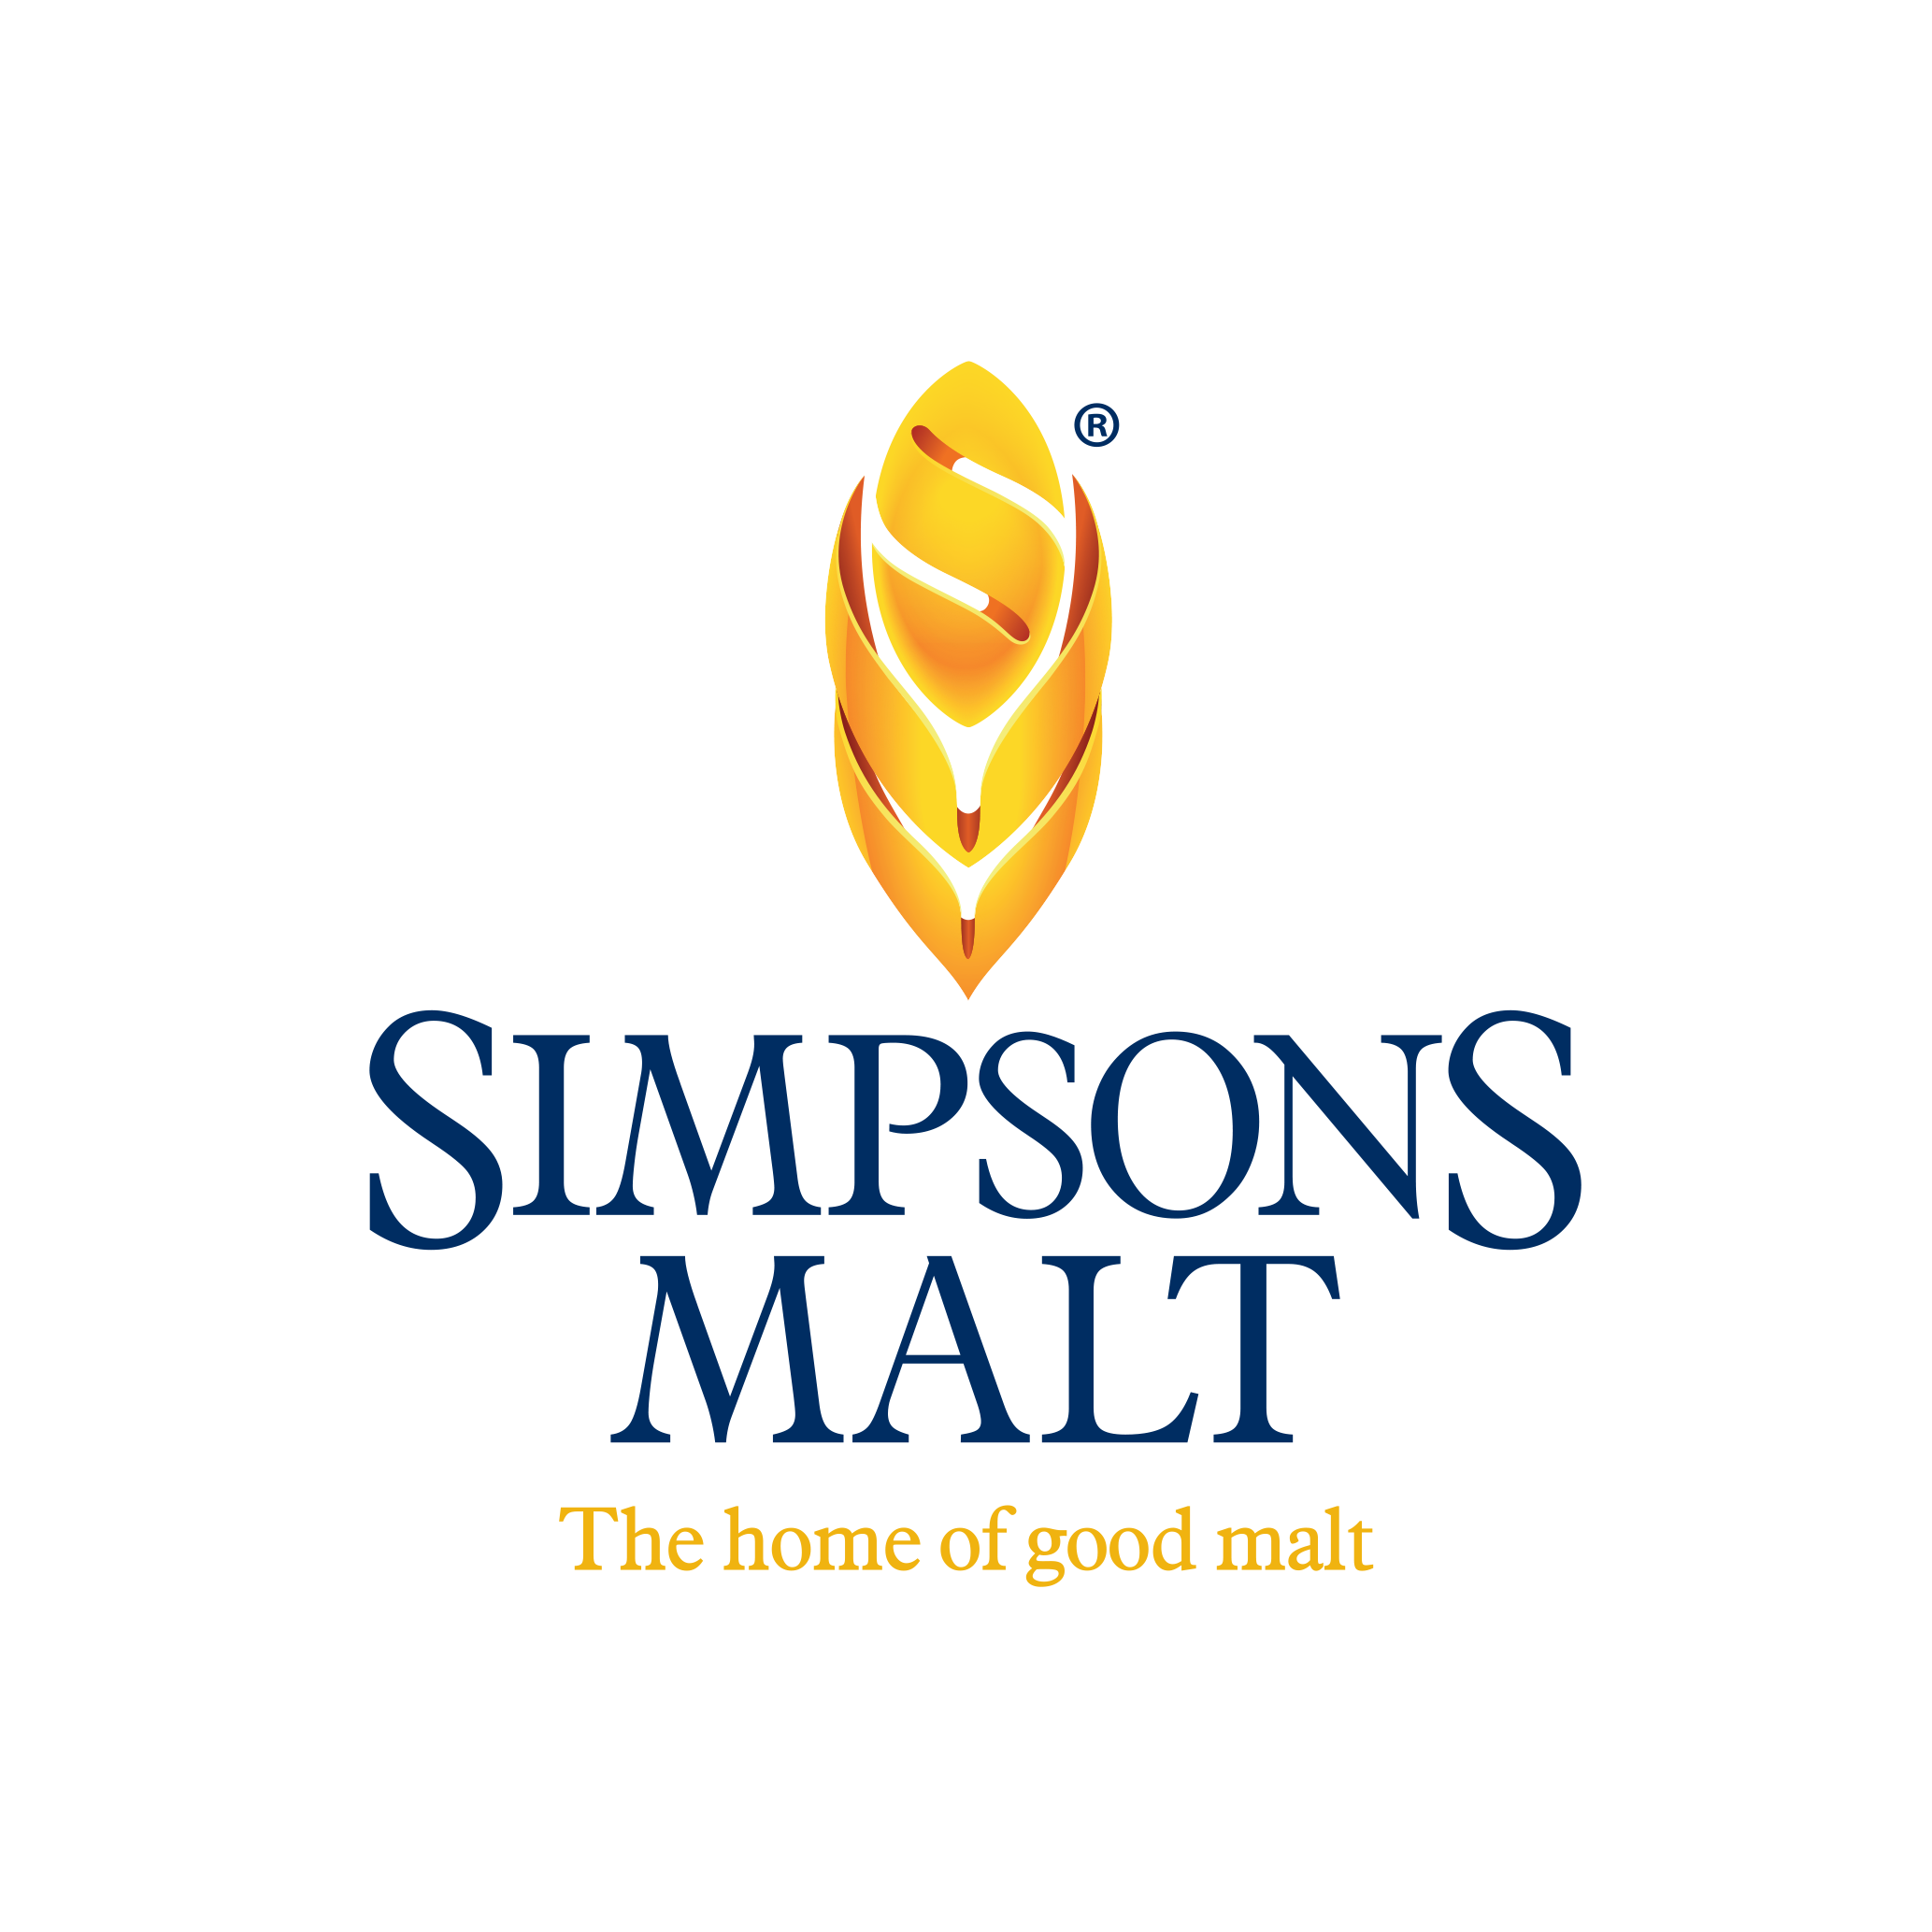 Simpsons Malt Registered logo - PNG.png